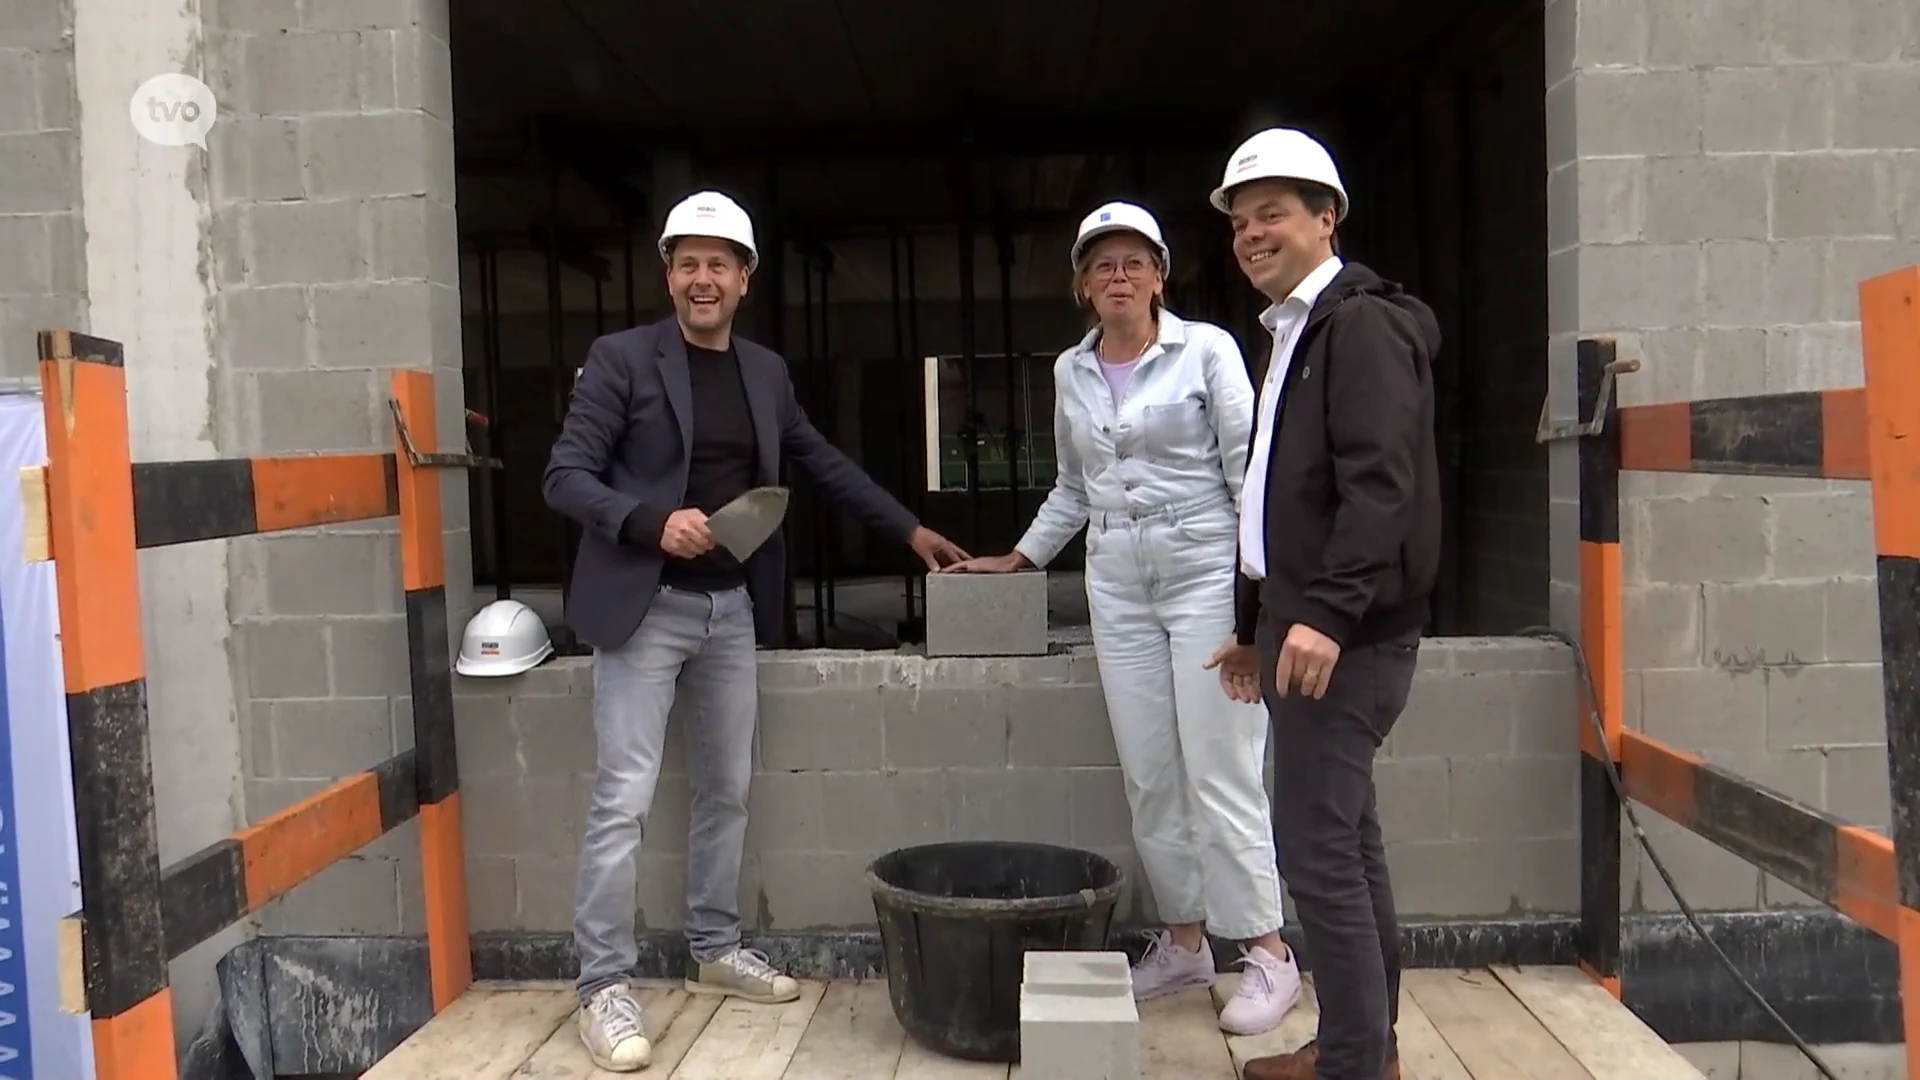 Bouw nieuwe Techniekhuis in Sint-Niklaas is gestart: "Nieuwe thuishaven voor 200 personeelsleden"